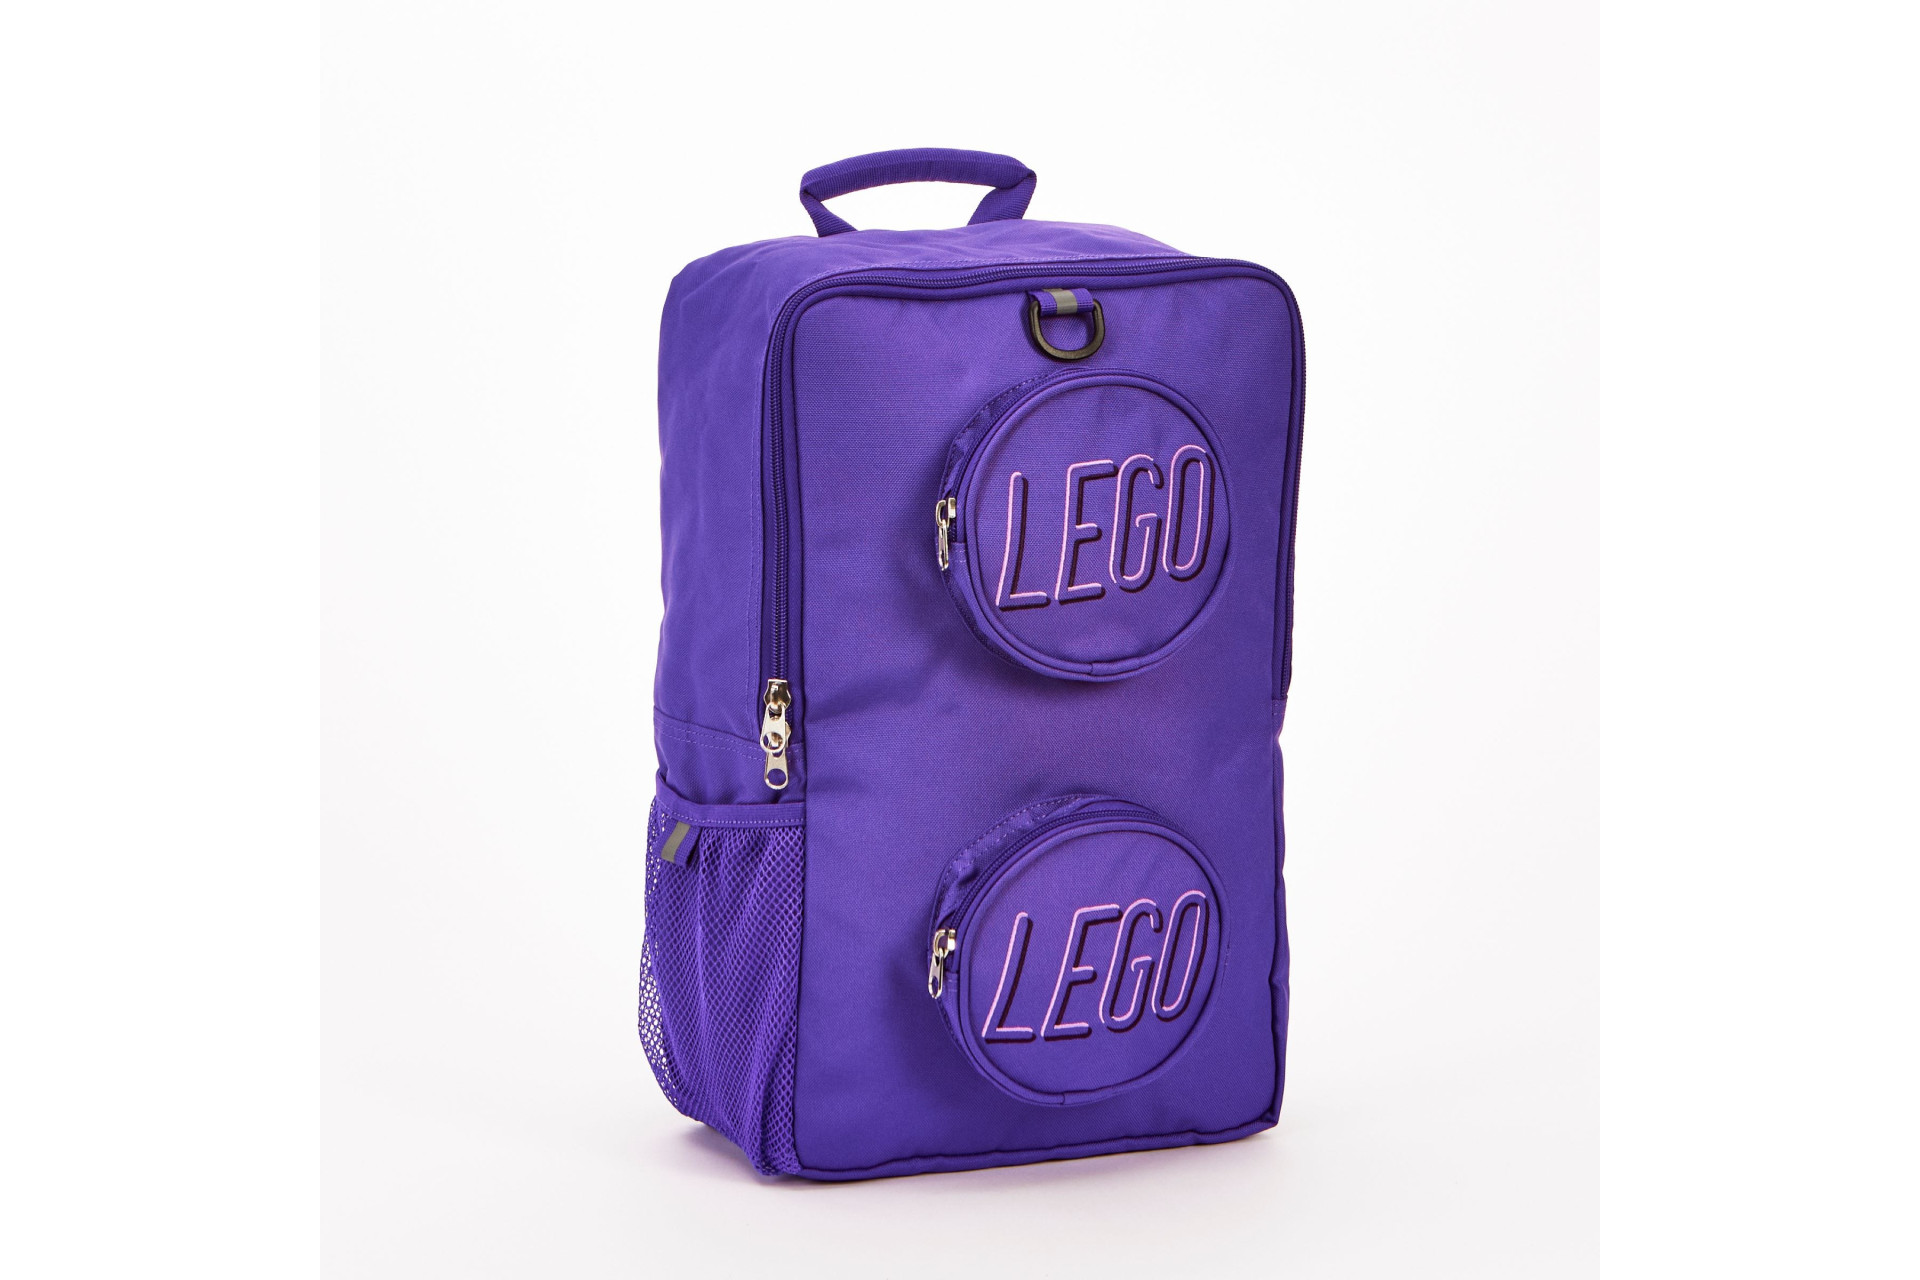 Acheter Lego 5008753 Sac à dos en forme de brique - Violet